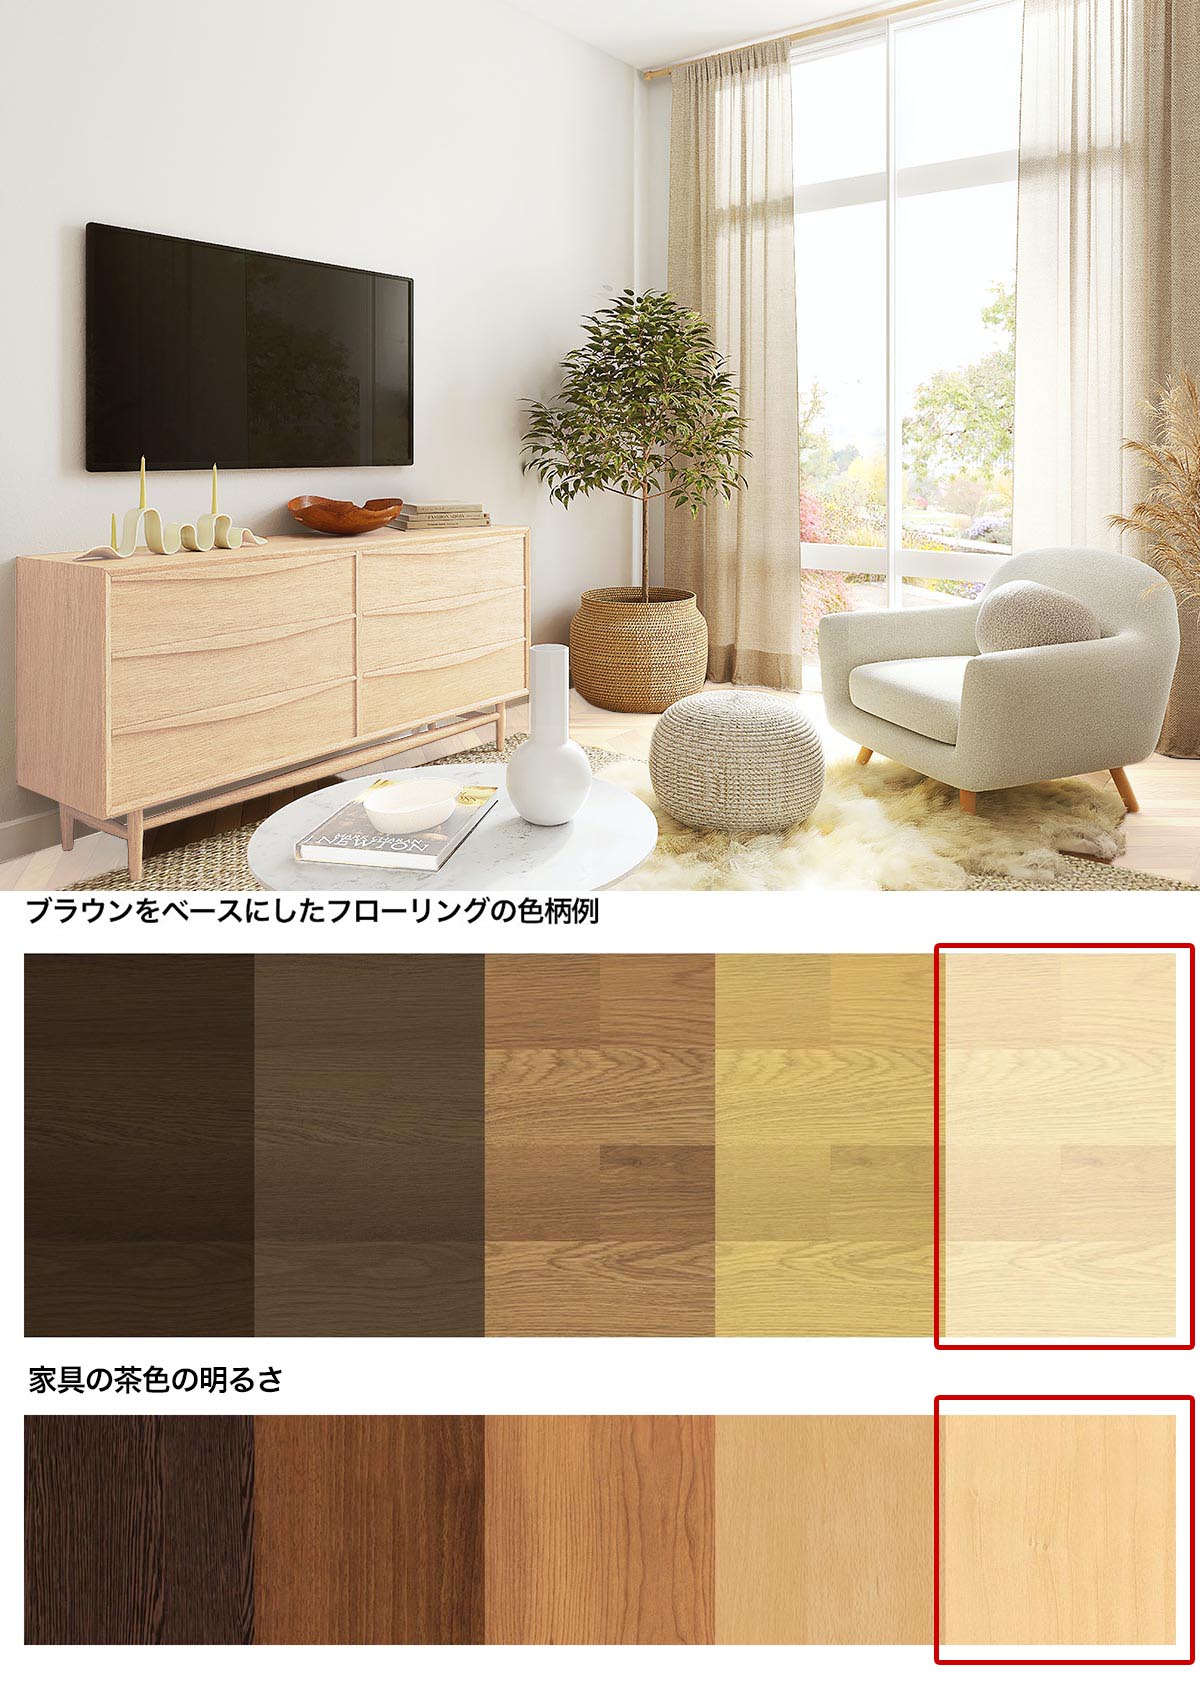 白い床と白っぽい茶色の家具